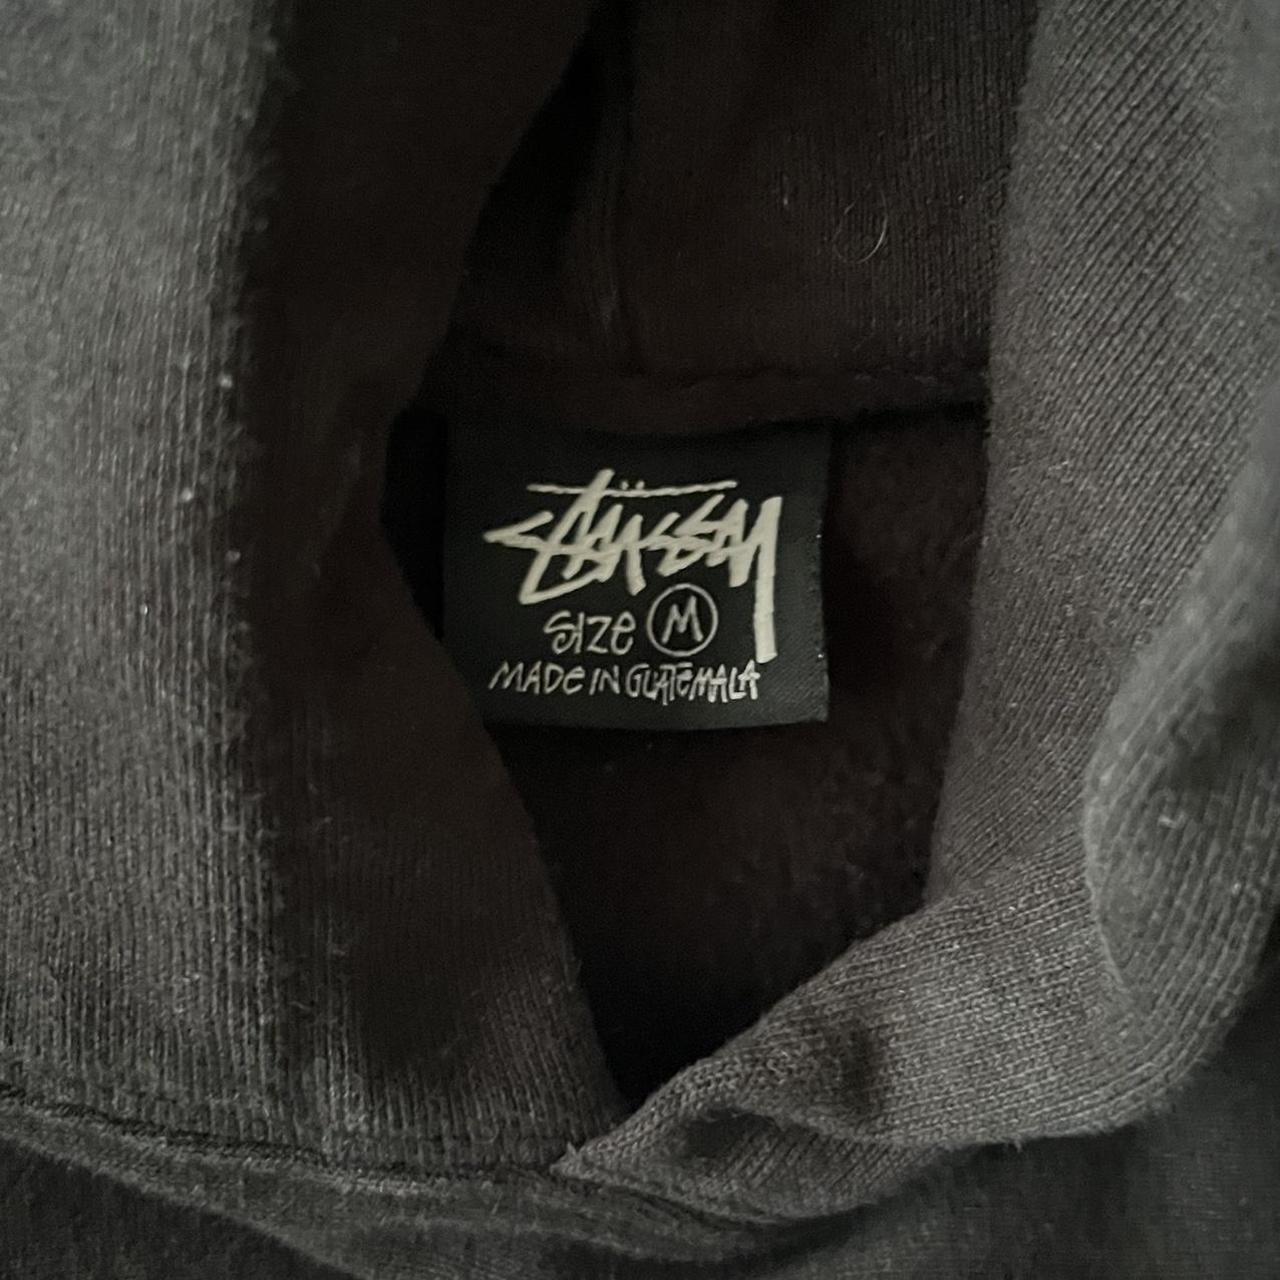 Stussy Black Exclusive LA Store Hoodie no hoodie... - Depop